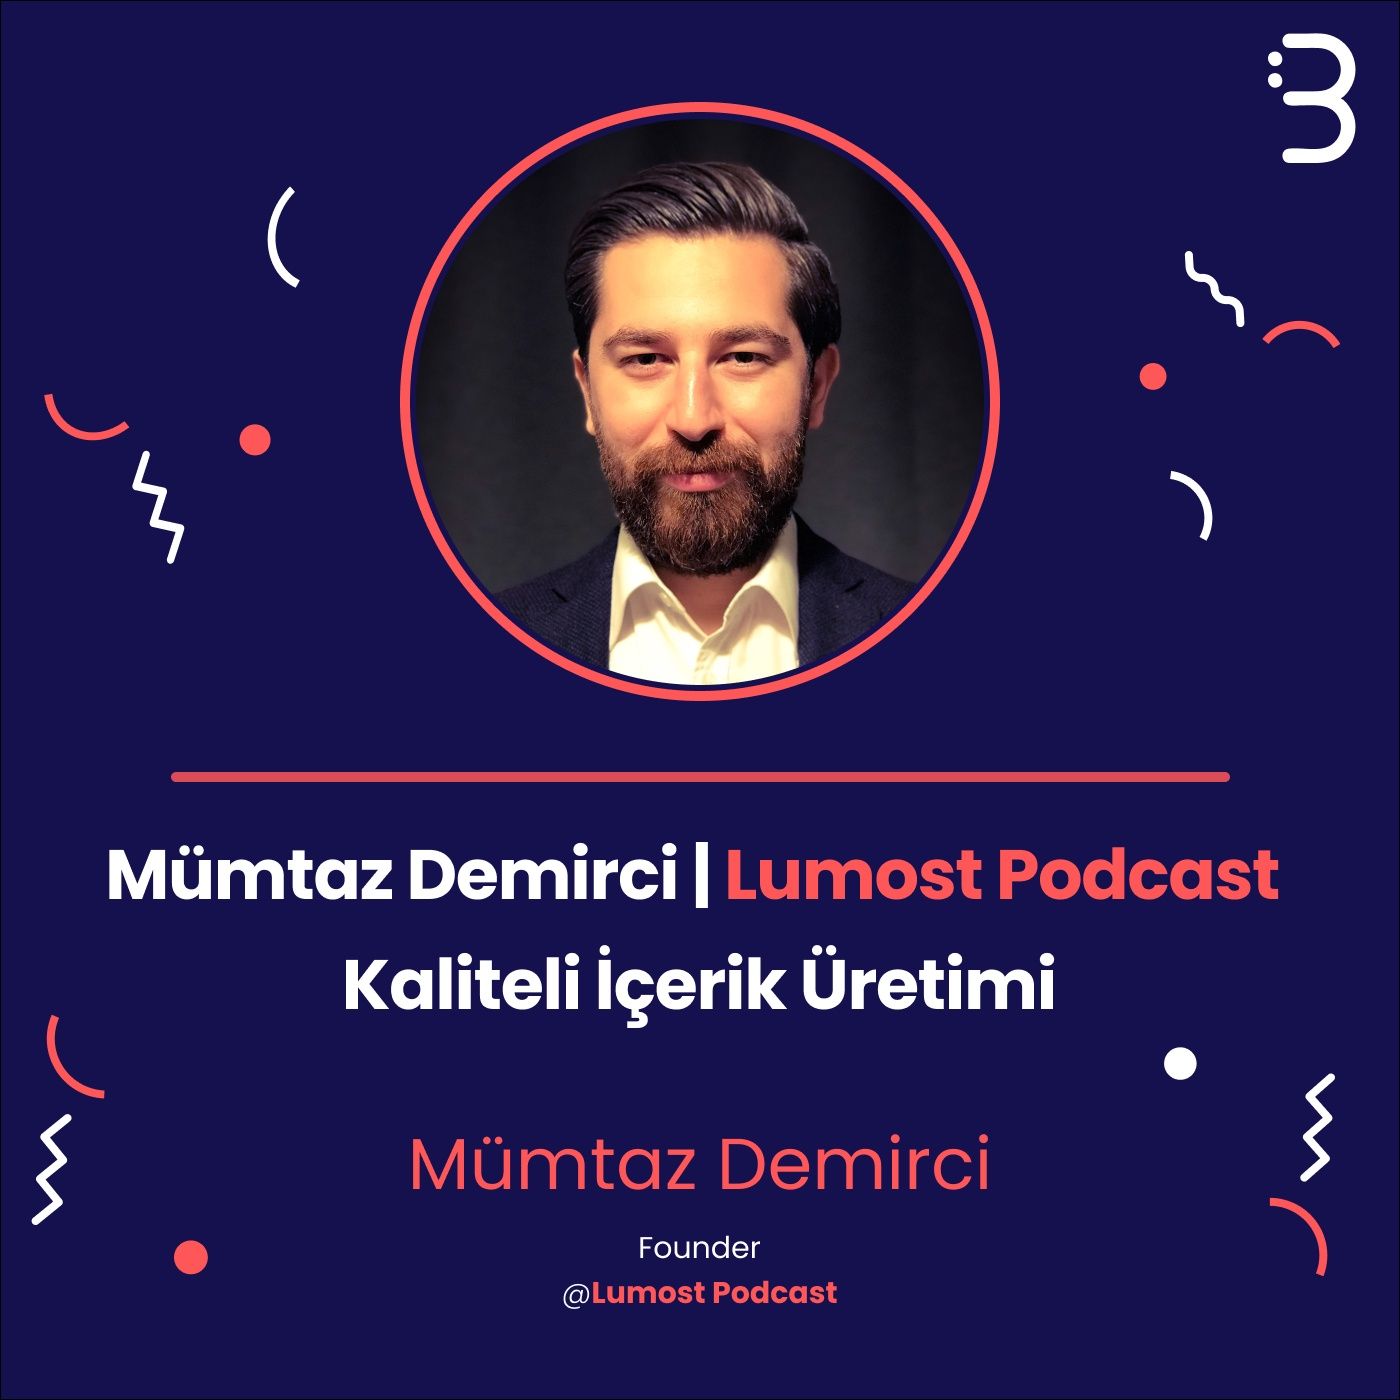 Mümtaz Demirci | Lumost Podcast | Kaliteli İçerik Üretimi